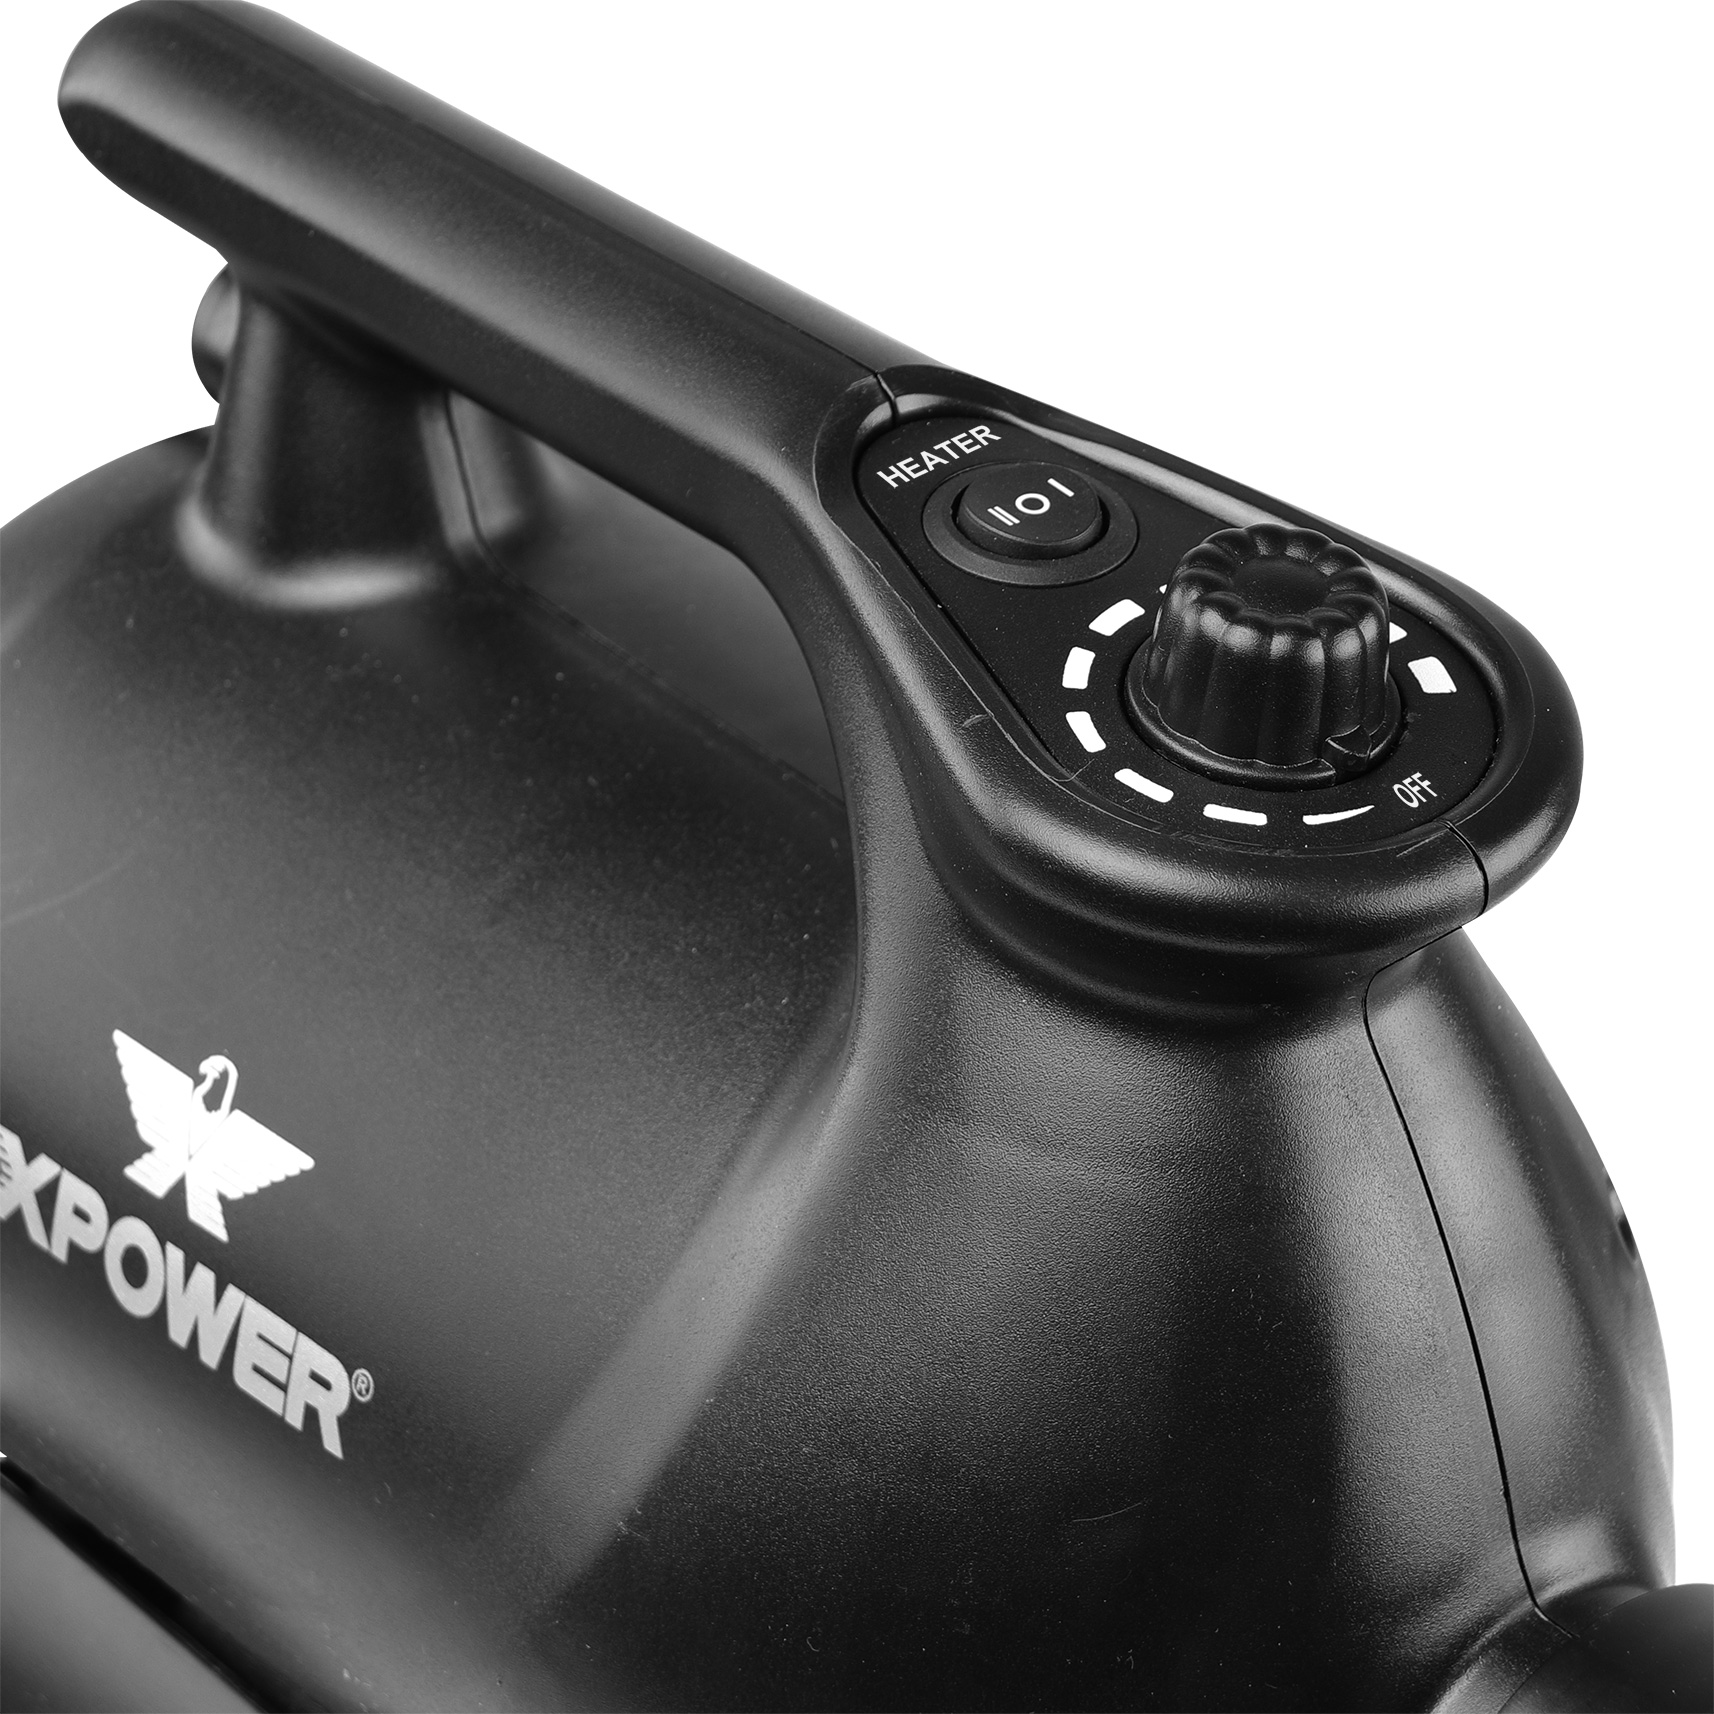  Xpower Sèche-voiture portable spécialement conçu pour le  nettoyage et le séchage efficaces et sans contact des voitures (A-12)